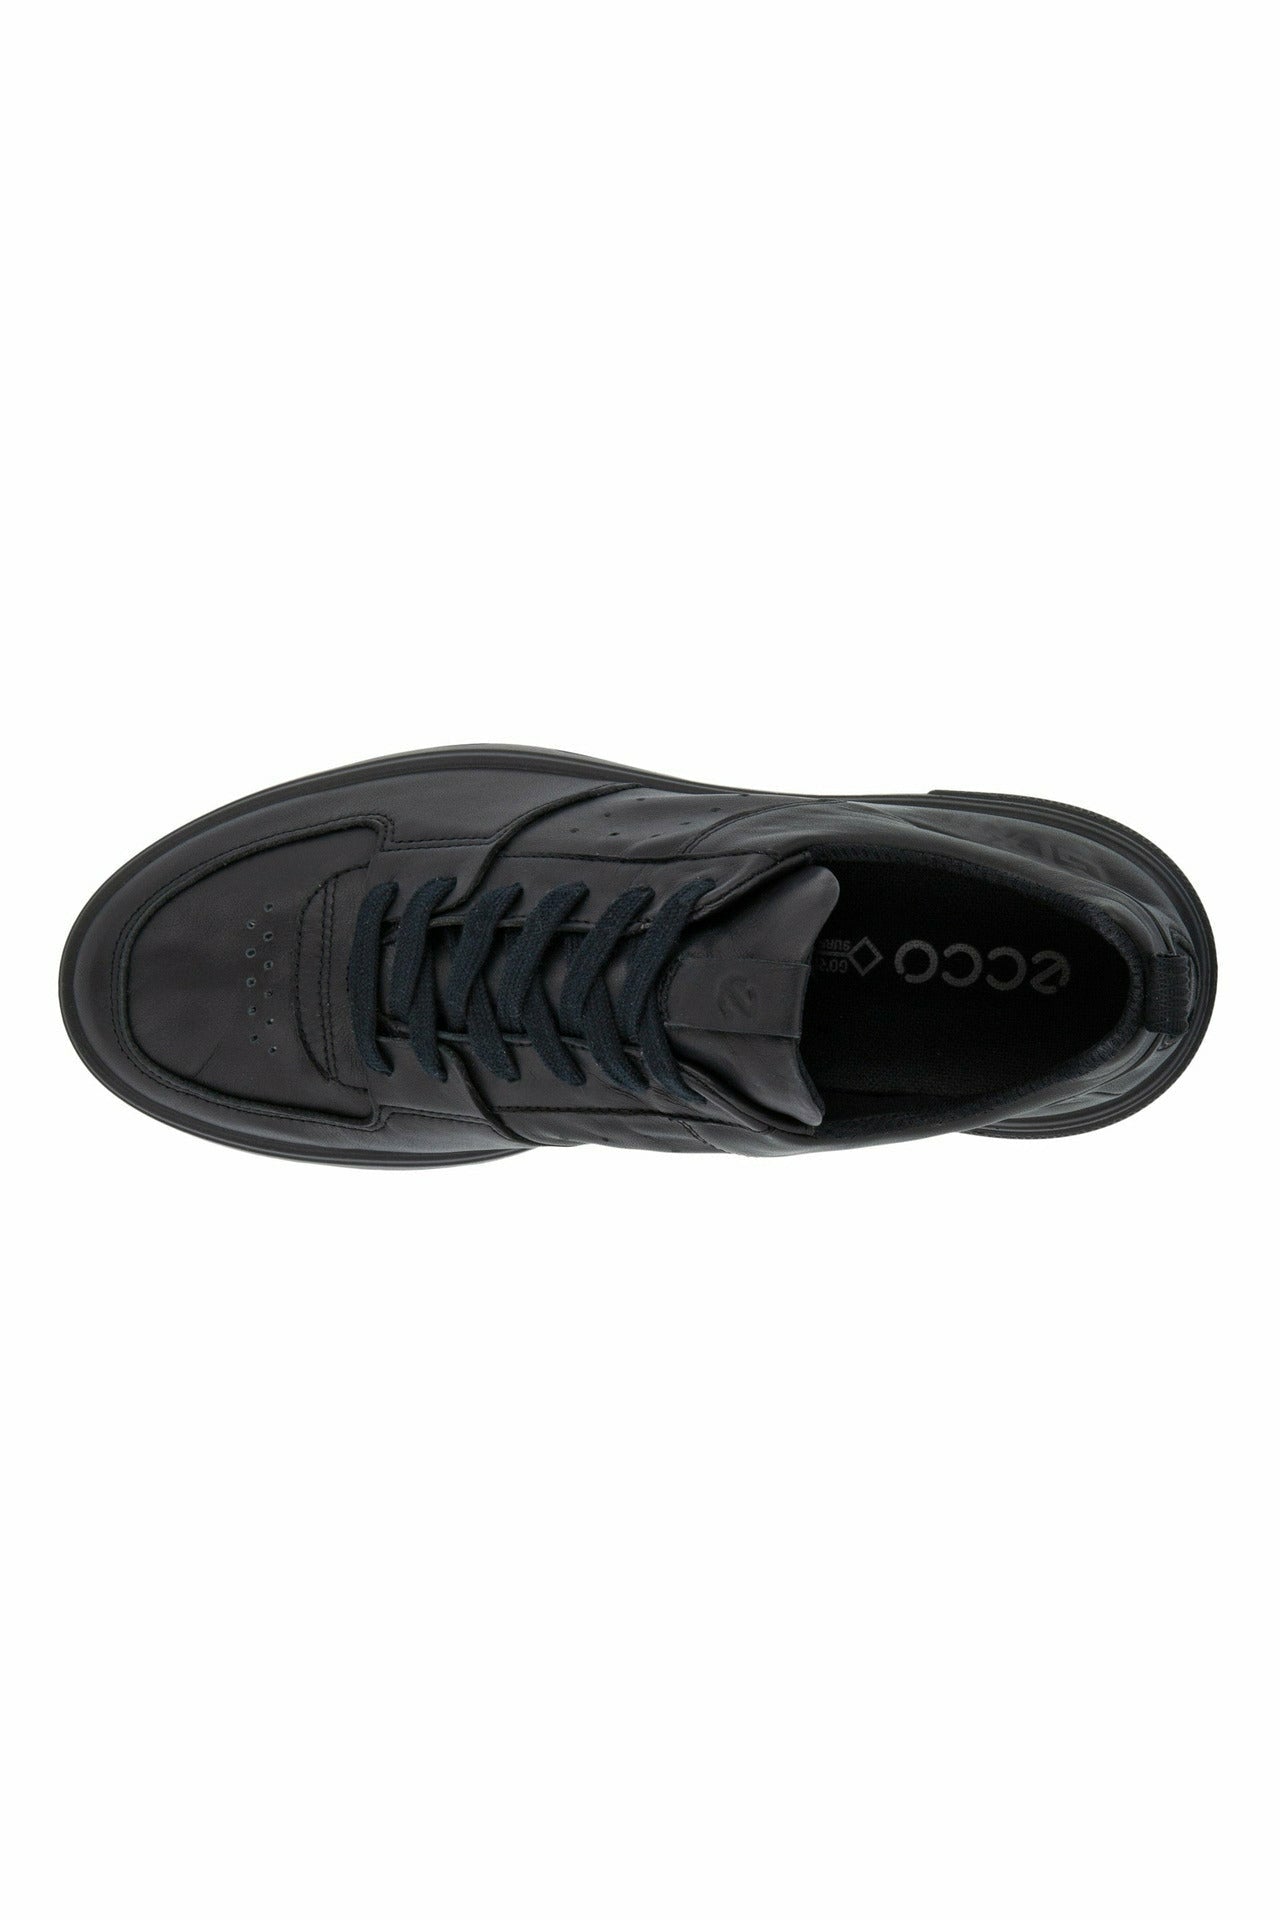 Ecco Women's Size 9 Blue MX Low Slip On Sneaker Shoes